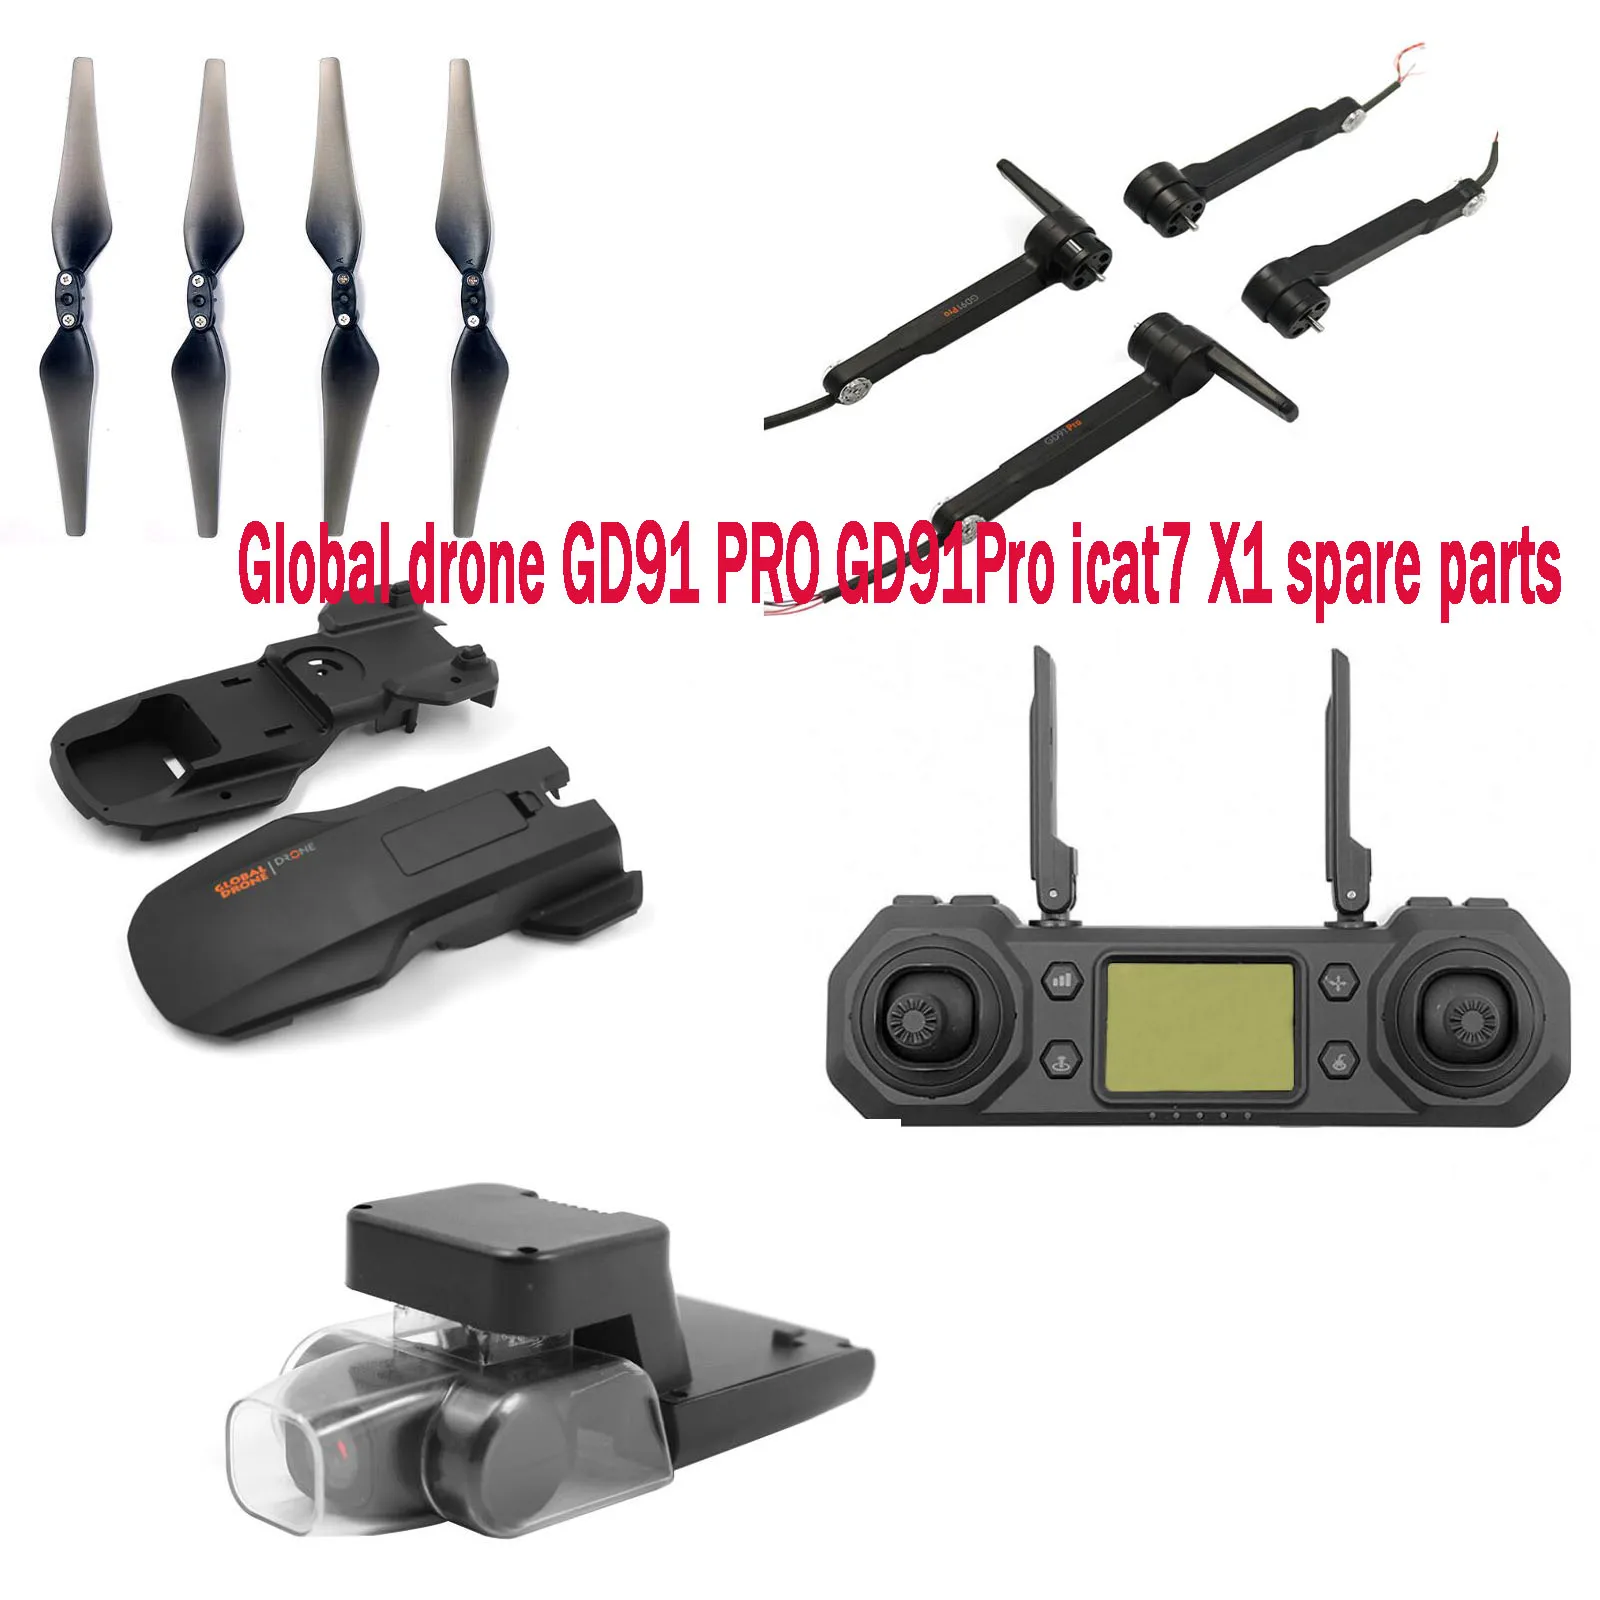 Pasaulio drone GD91 PRO GD91Pro icat7 X1 4k GPS RC drone atsarginės dalys, kėbulo karkasas balde sraigtus, variklio rankos fotoaparato nuotolinio valdymo